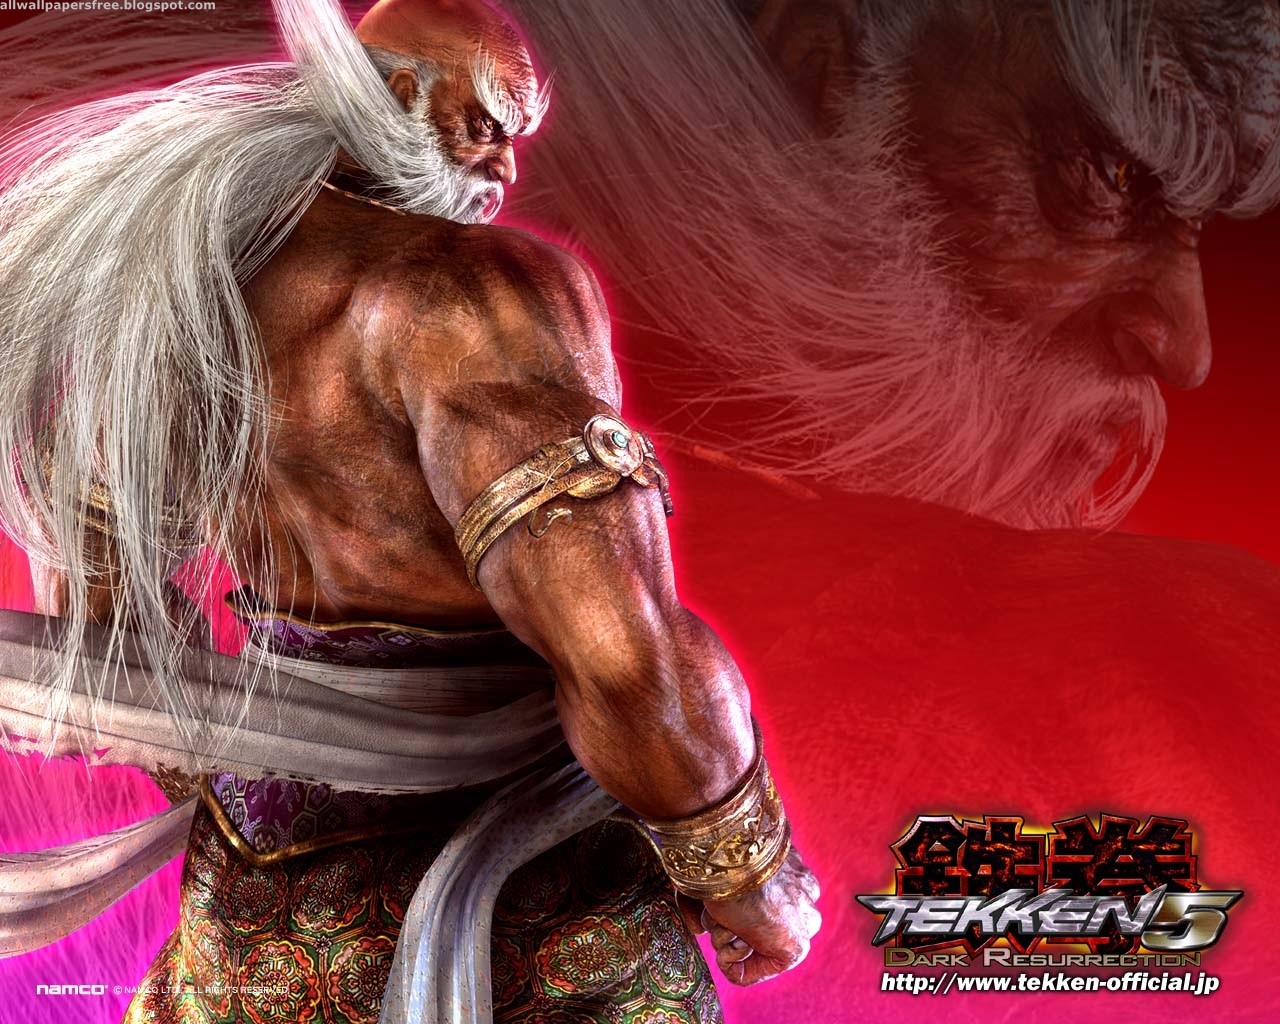 Tekken 5: Dark Resurrection Picture